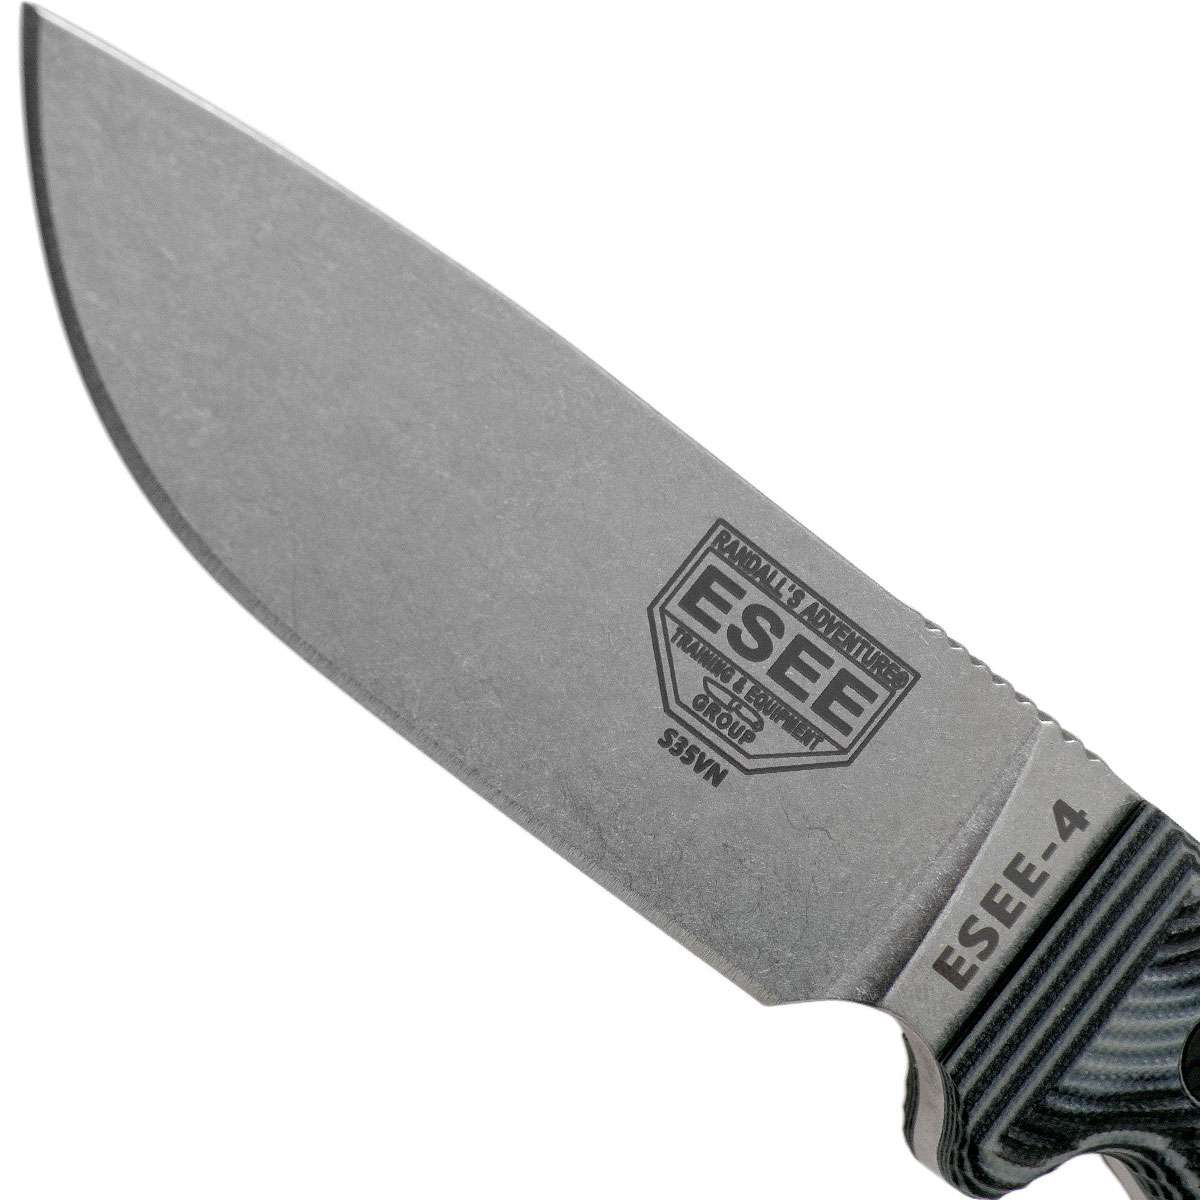 ESEE-4 S35VN Grey/Black Knife G-10 3D Handle